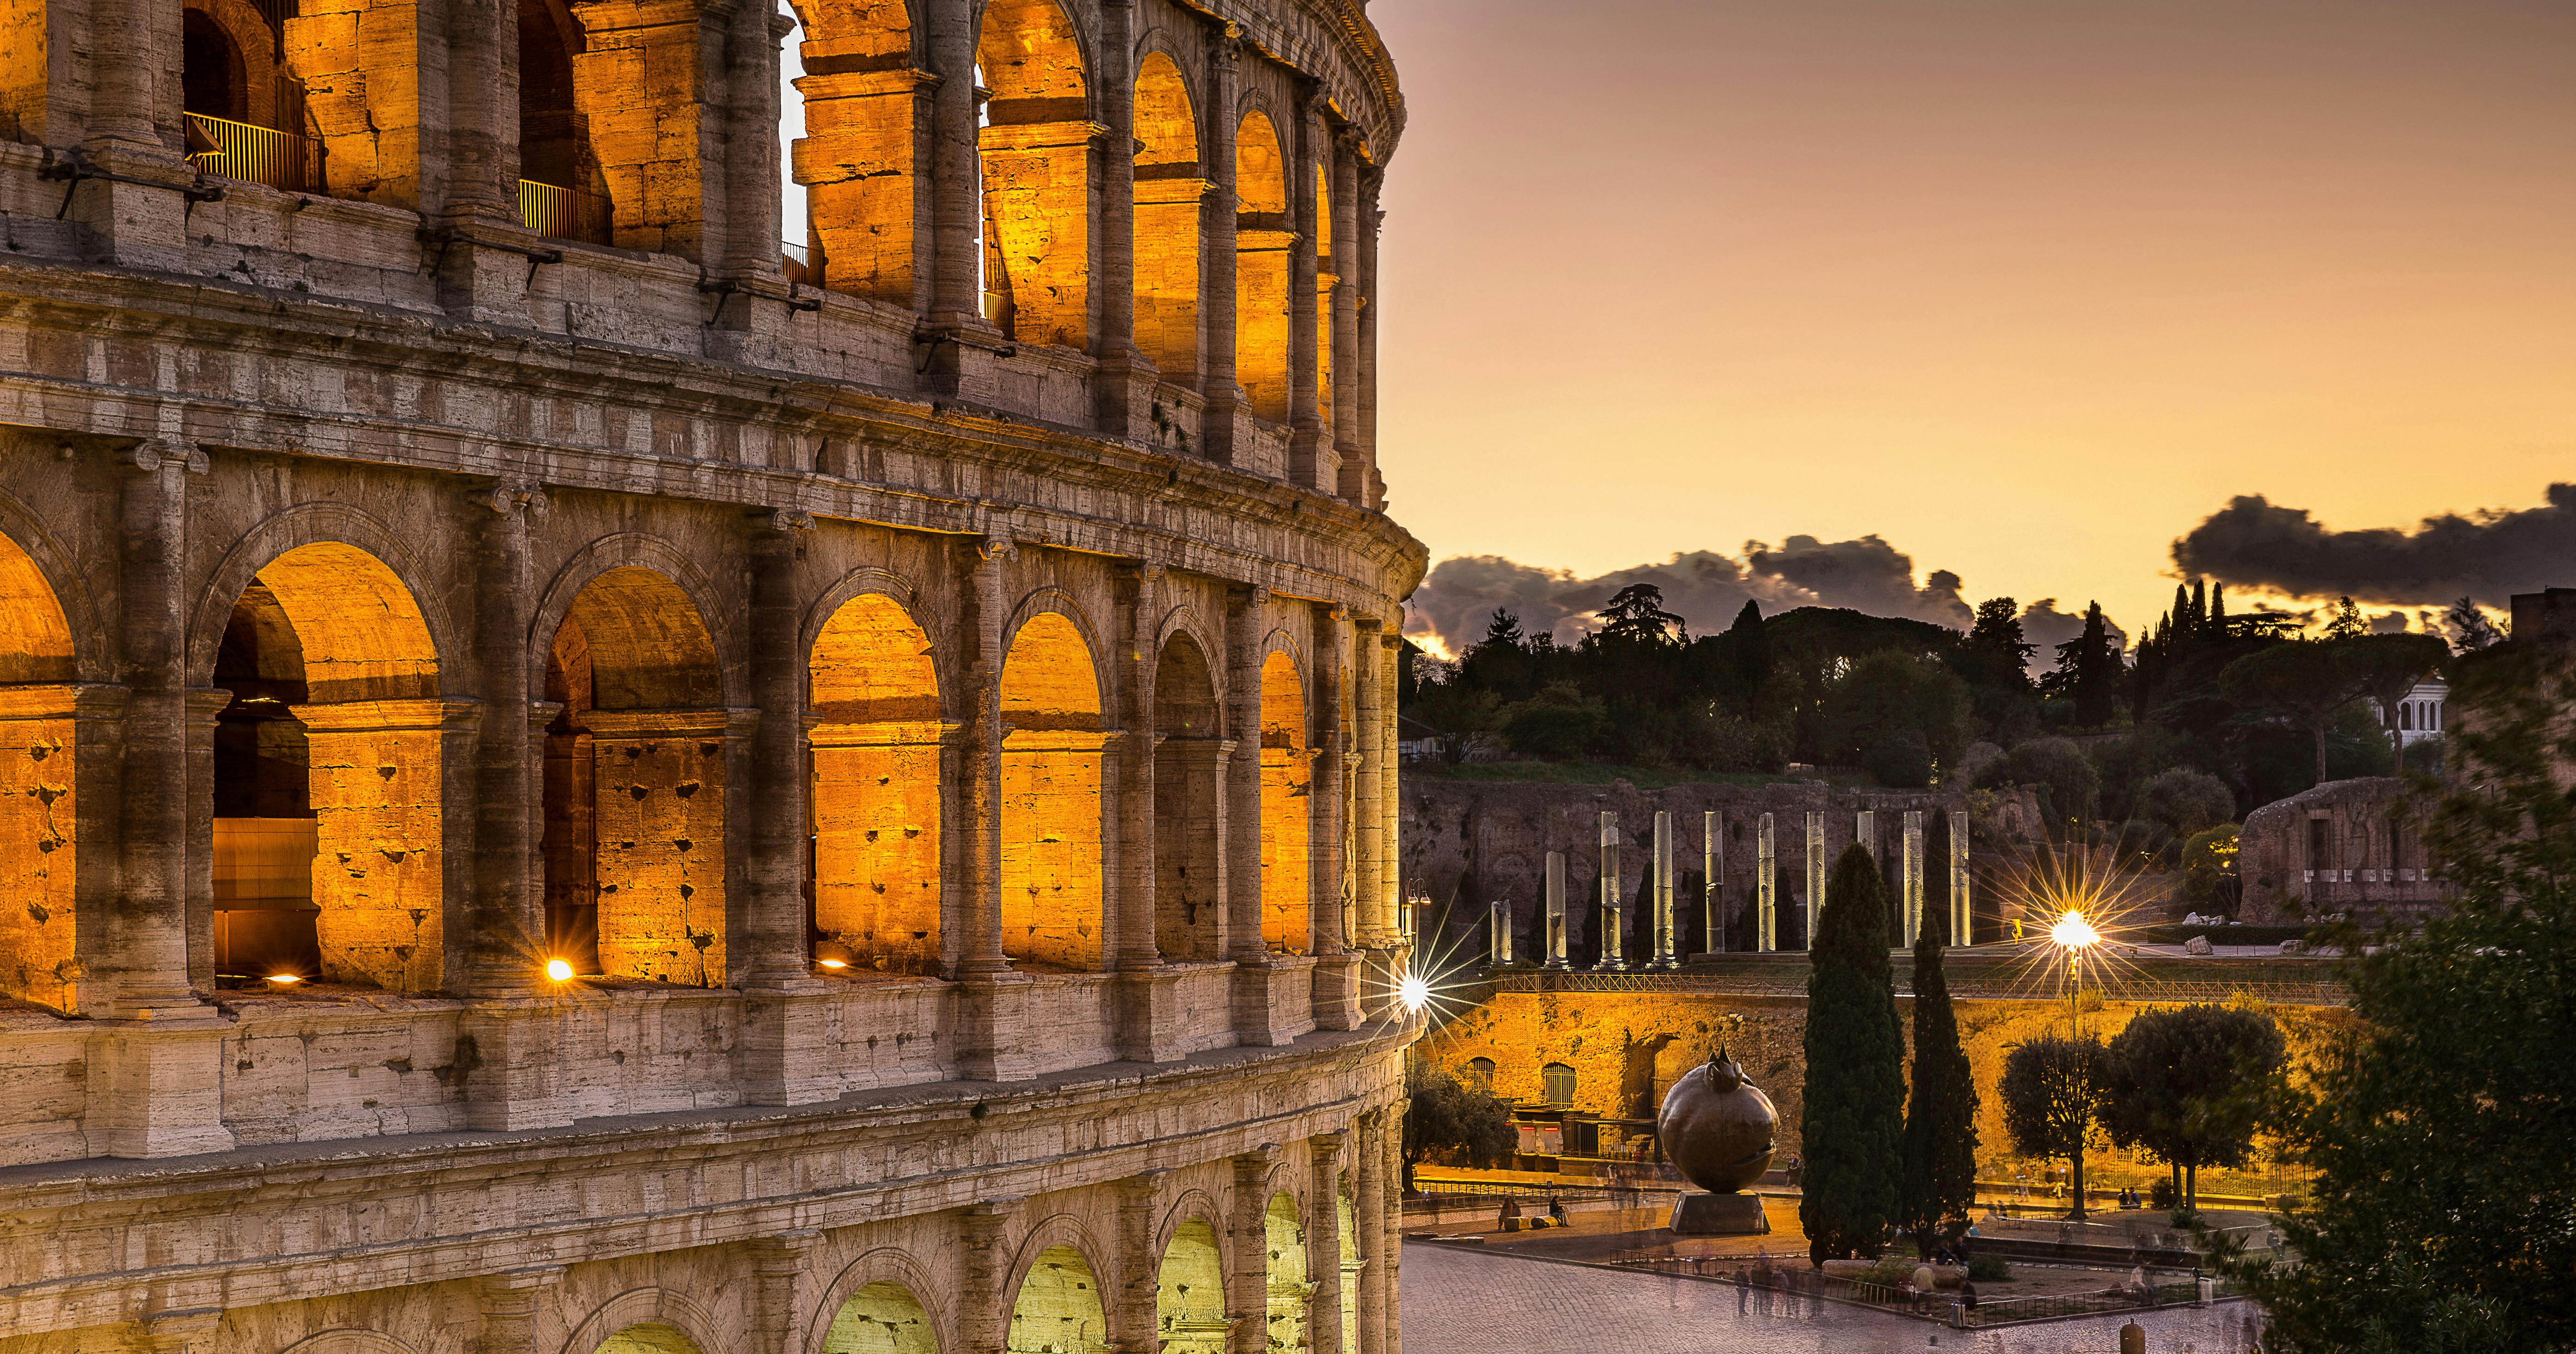 Wycieczka z przewodnikiem po Koloseum, Palatynie i wycieczka autobusowa po Rzymie typu hop-on hop-off